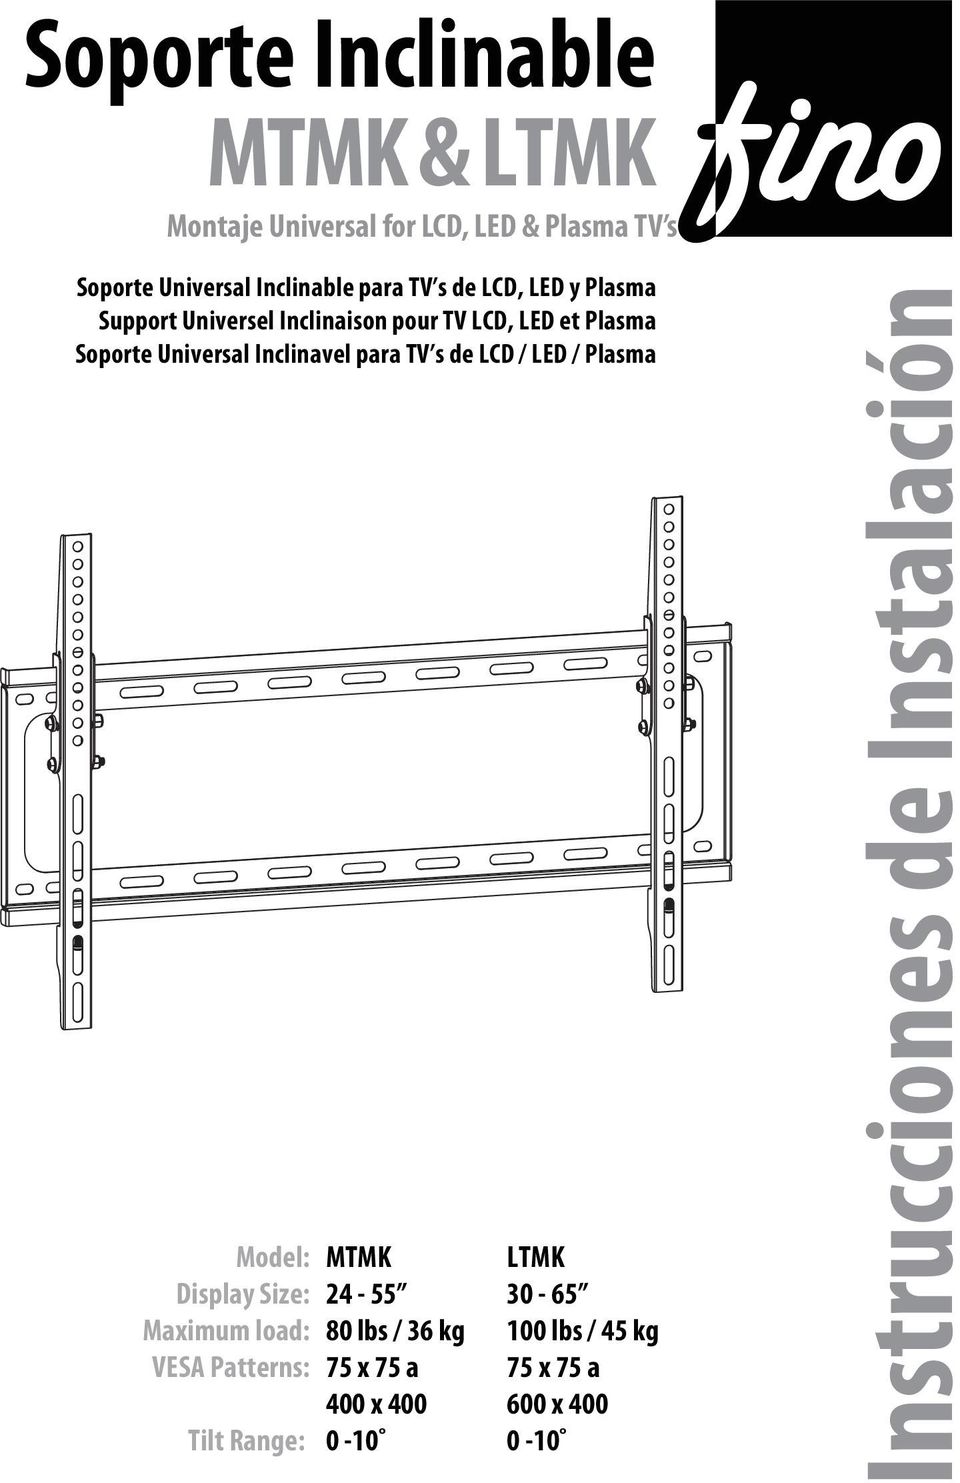 Display Size: Maximum load: VESA Patterns: MTMK 4-55 80 lbs / 36 kg 75 x 75 a 400 x 400 Tilt Range: 0-0 LTMK